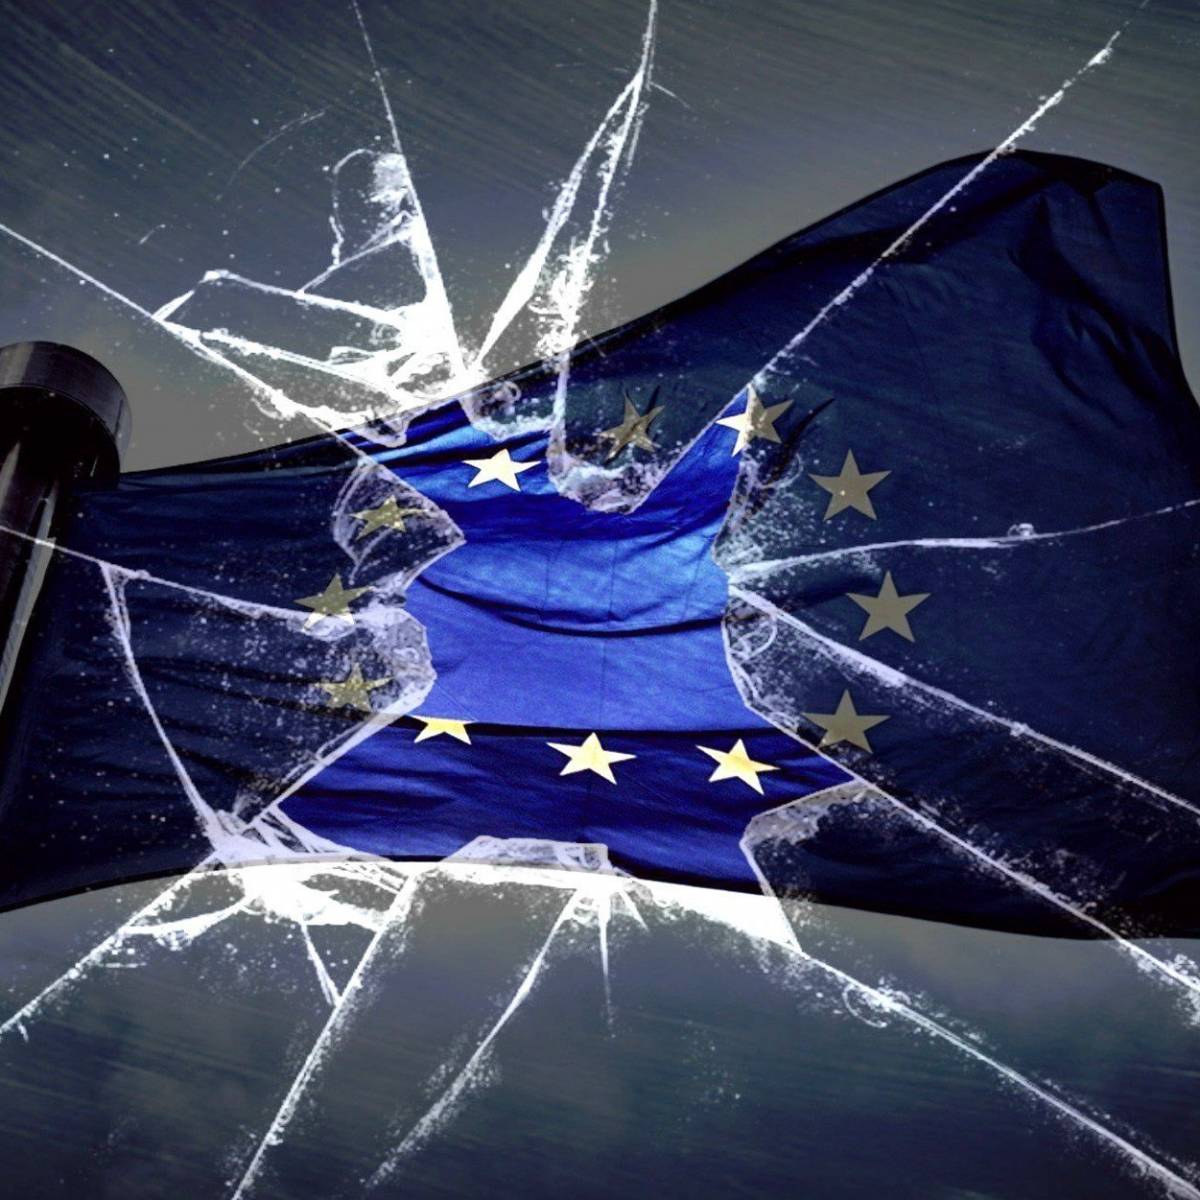 Разлад в дуэте «движущей силы» Европы: ЕС оказался в шатком положении